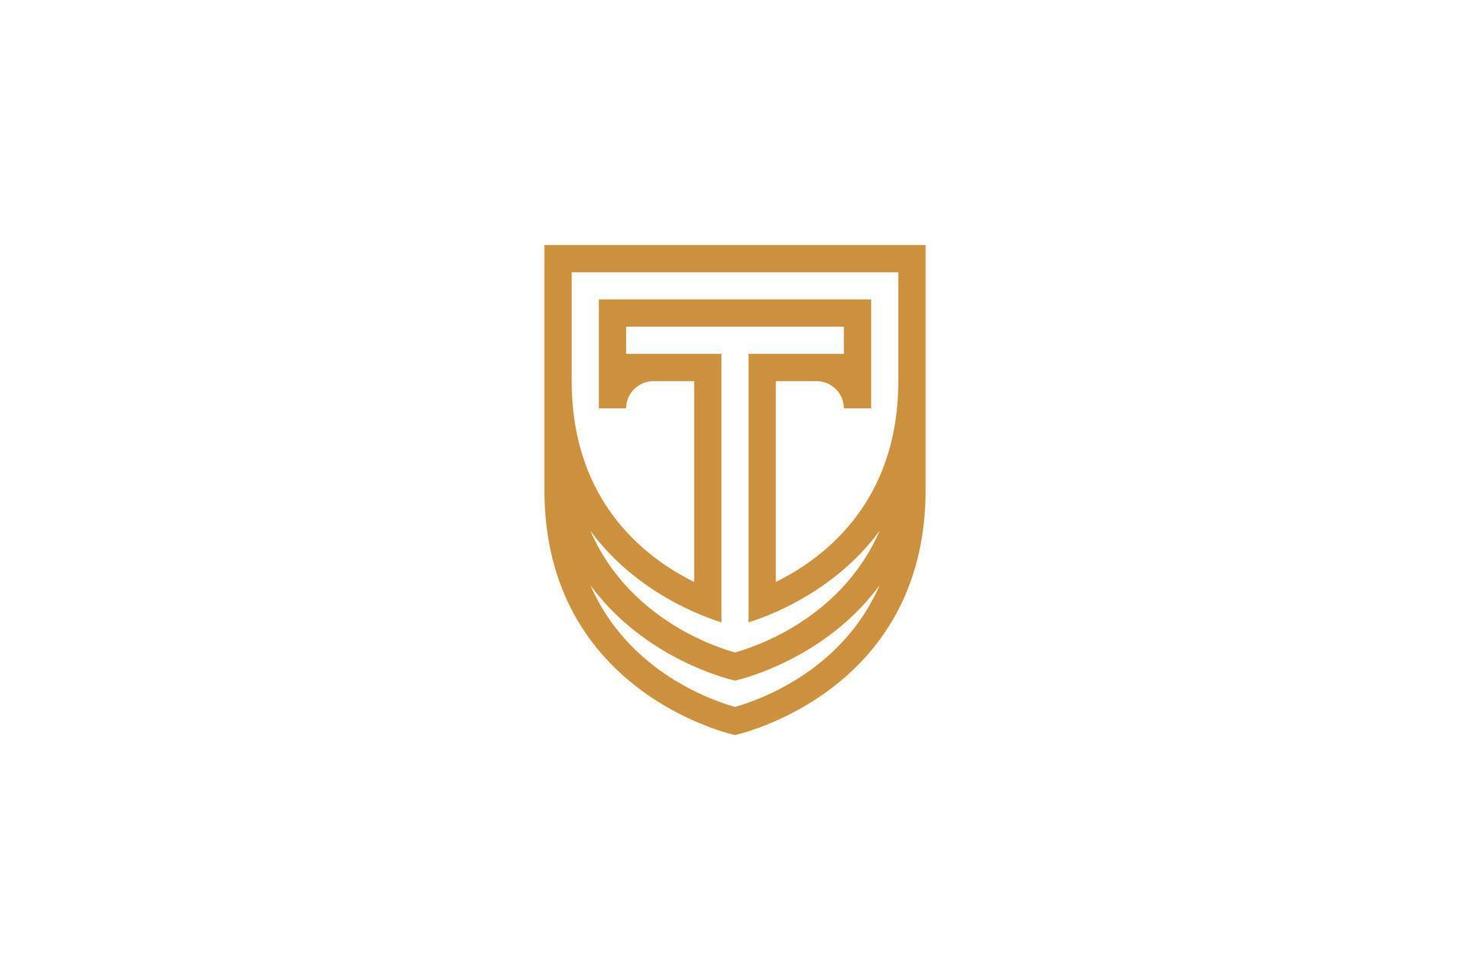 diseño de logotipo de letra t monoline vector